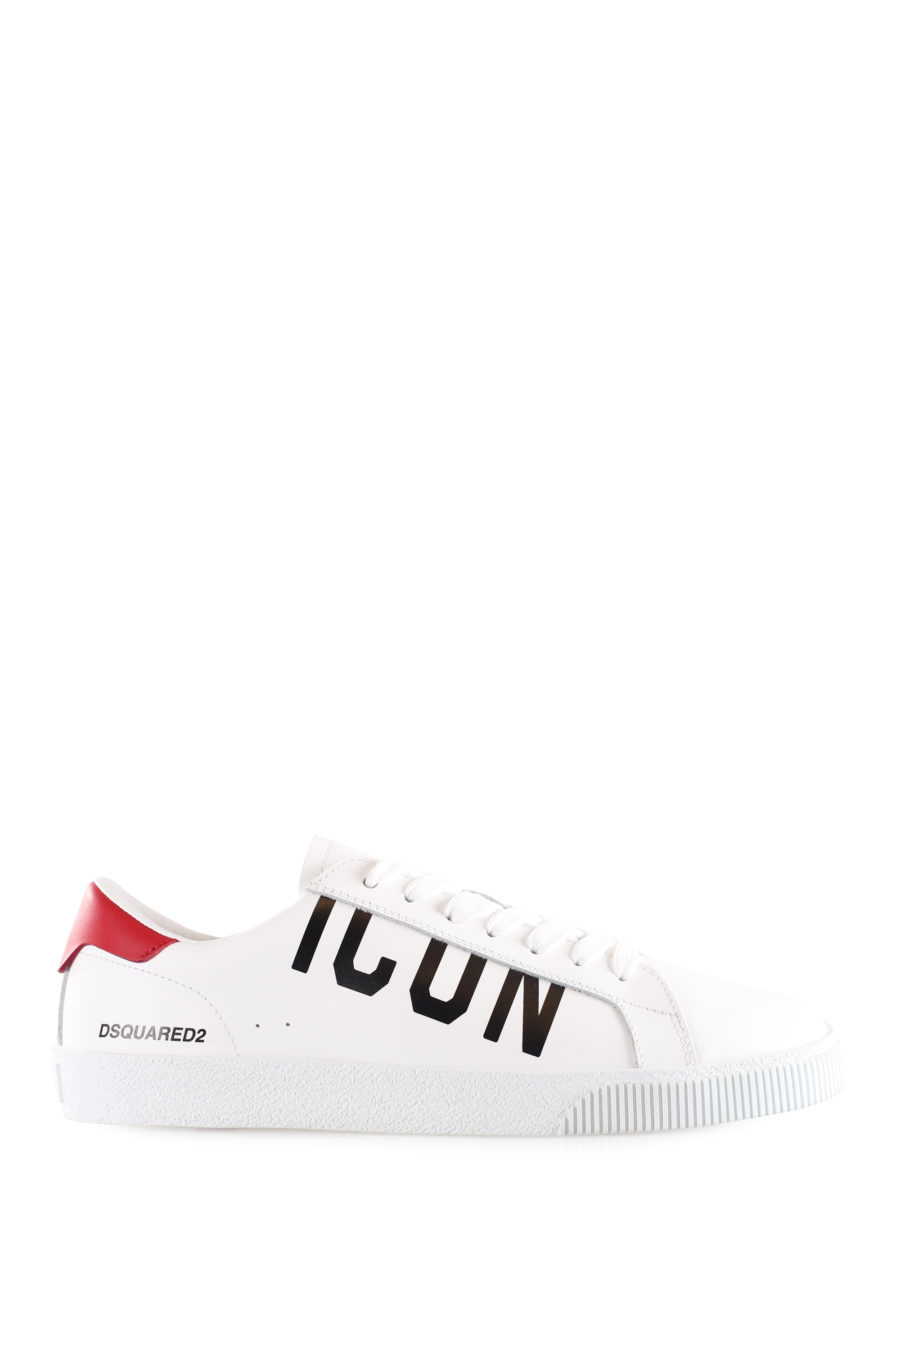 Zapatillas blancas con logo "icon" diagonal y detalle rojo - IMG 9529